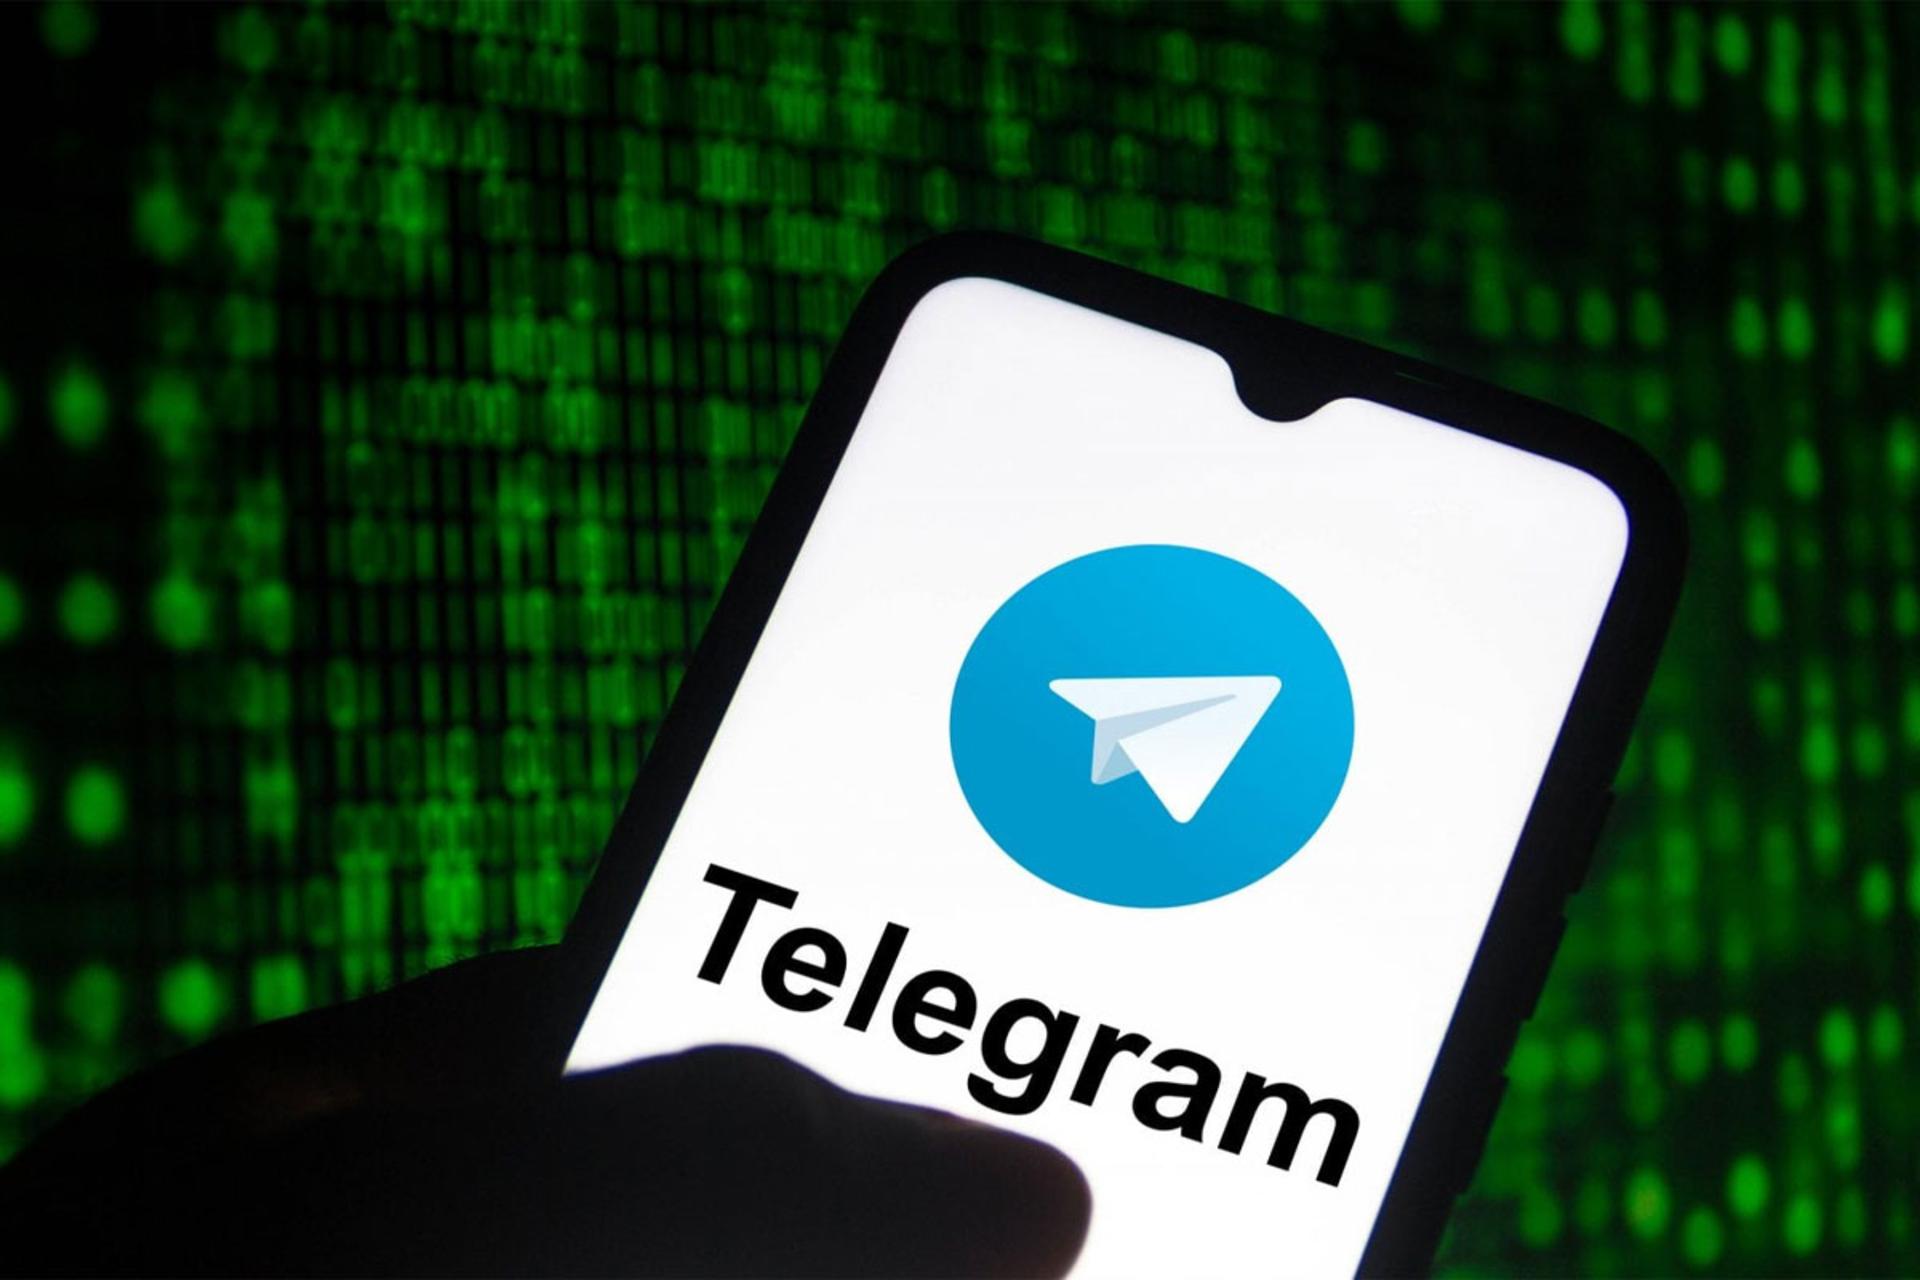 آموزش جلوگیری از هک تلگرام و افزایش امنیت آن